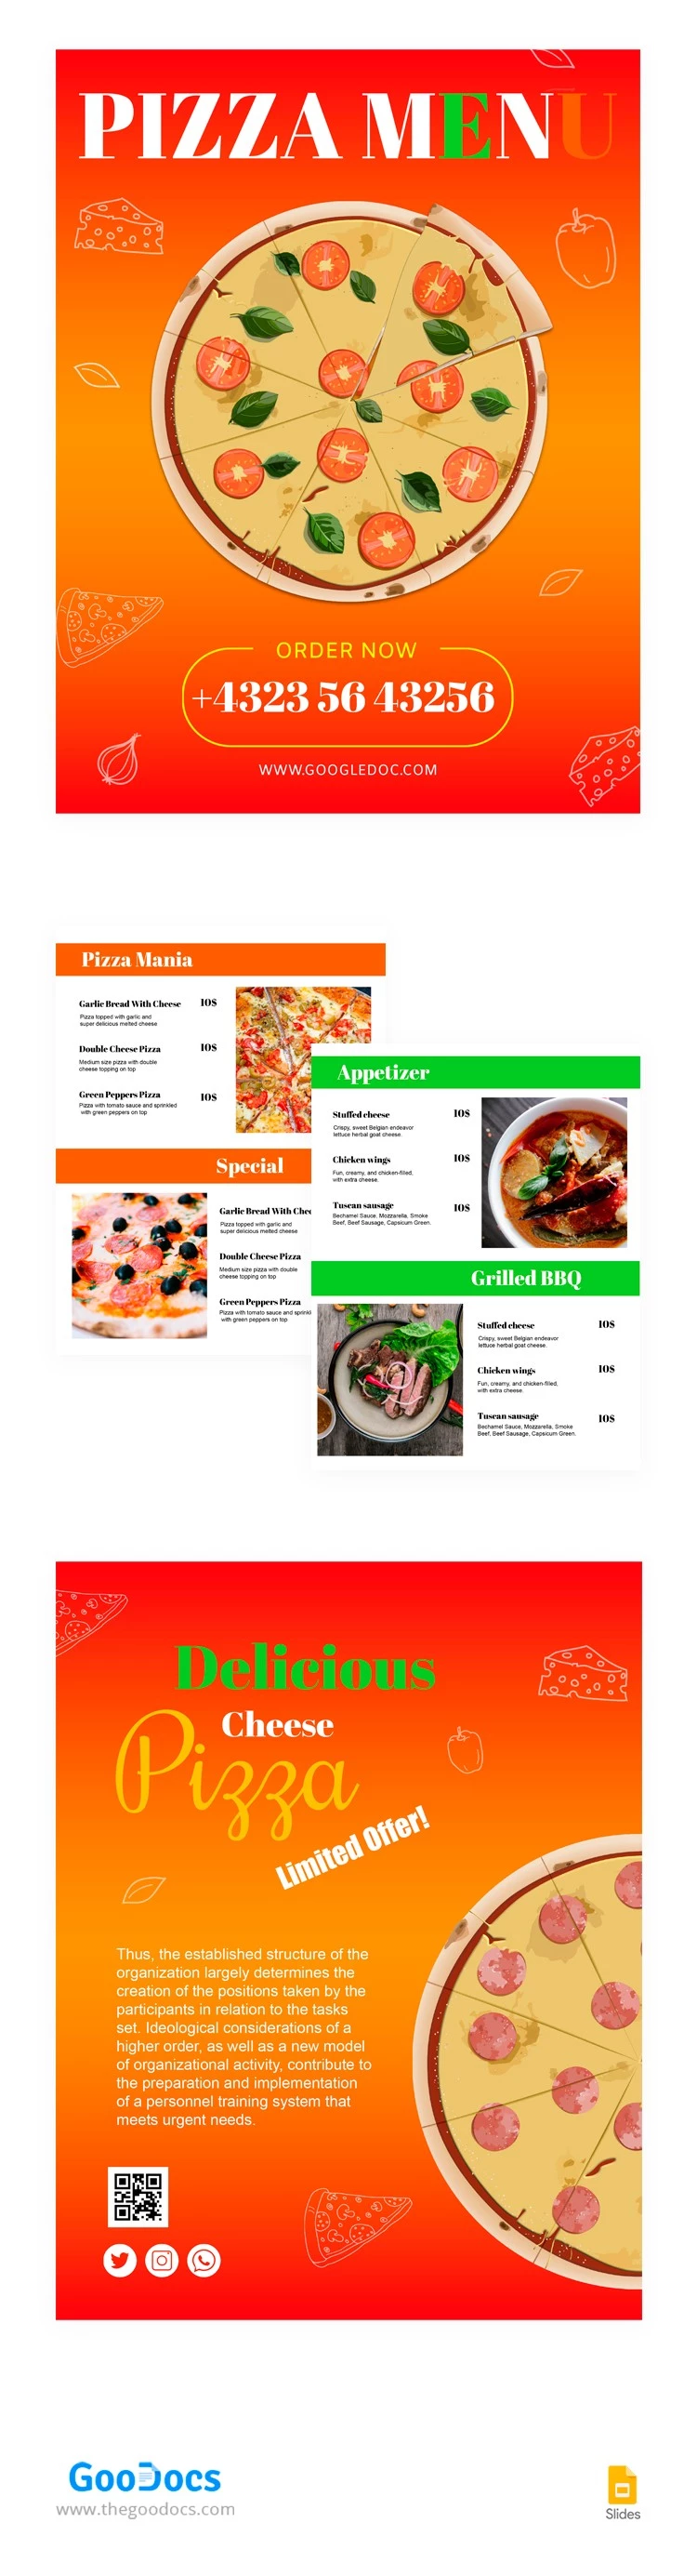 Menu du restaurant de pizzas italiennes - free Google Docs Template - 10063587